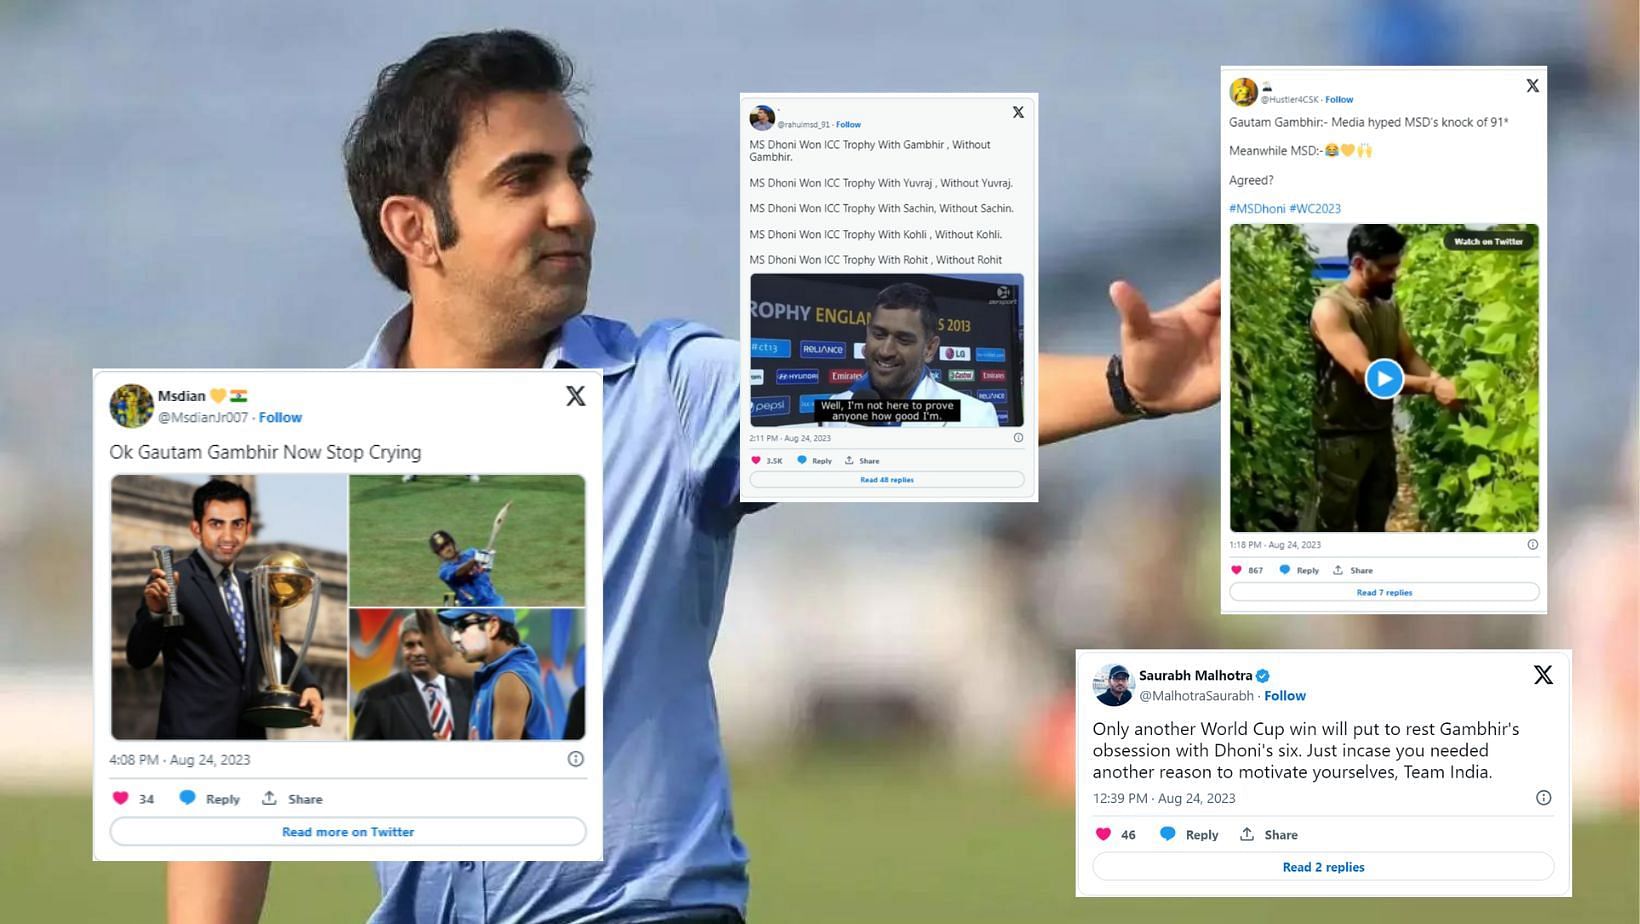 Twitter reactions to Gautam Gambhir